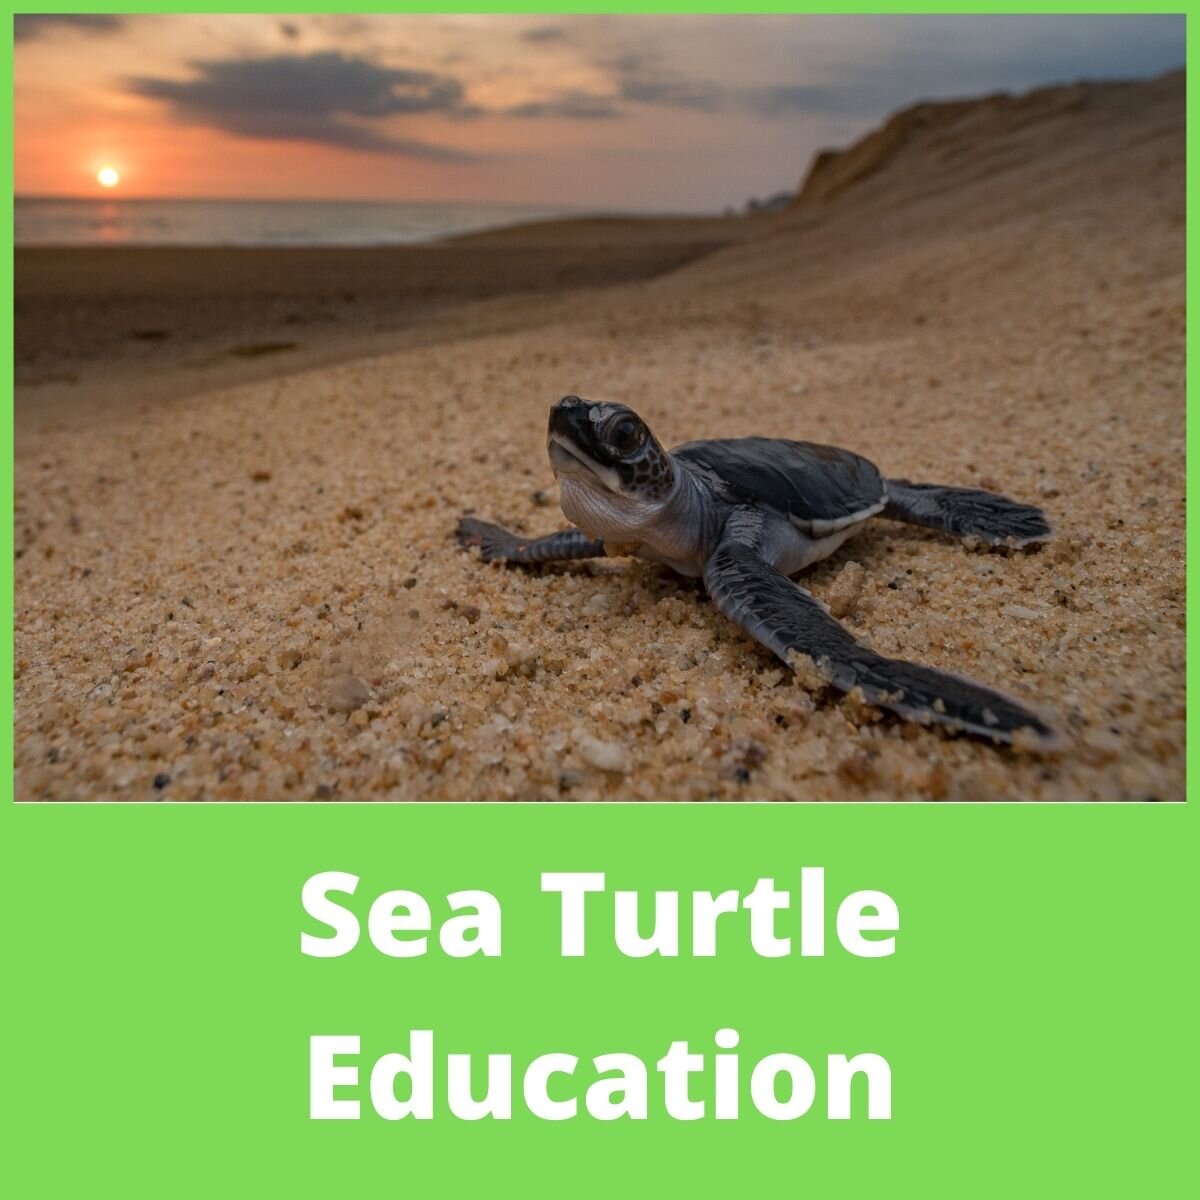 Sea Turtle Education.jpeg